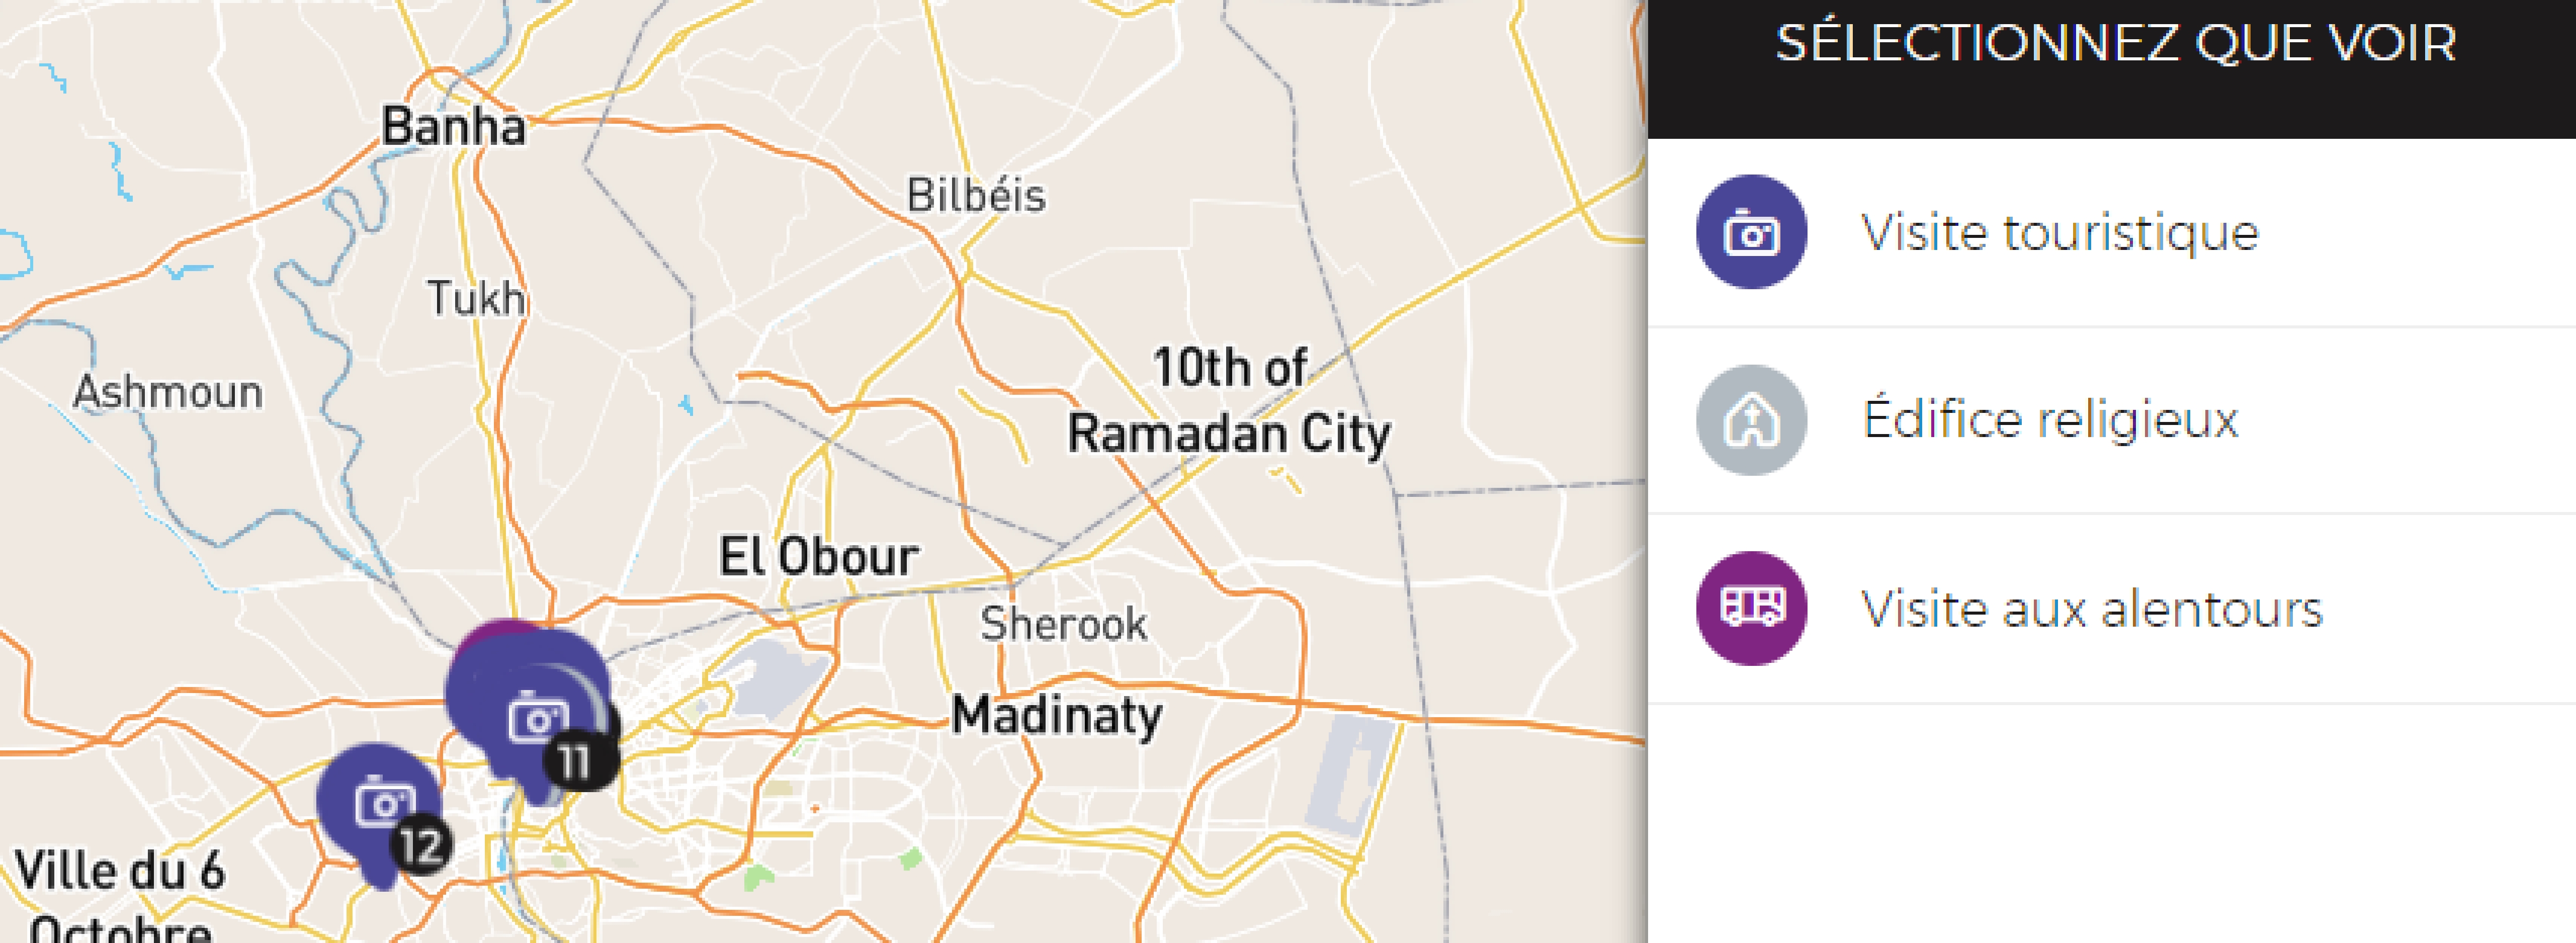 Une carte intéractive avec les endroits à visiter en égypte